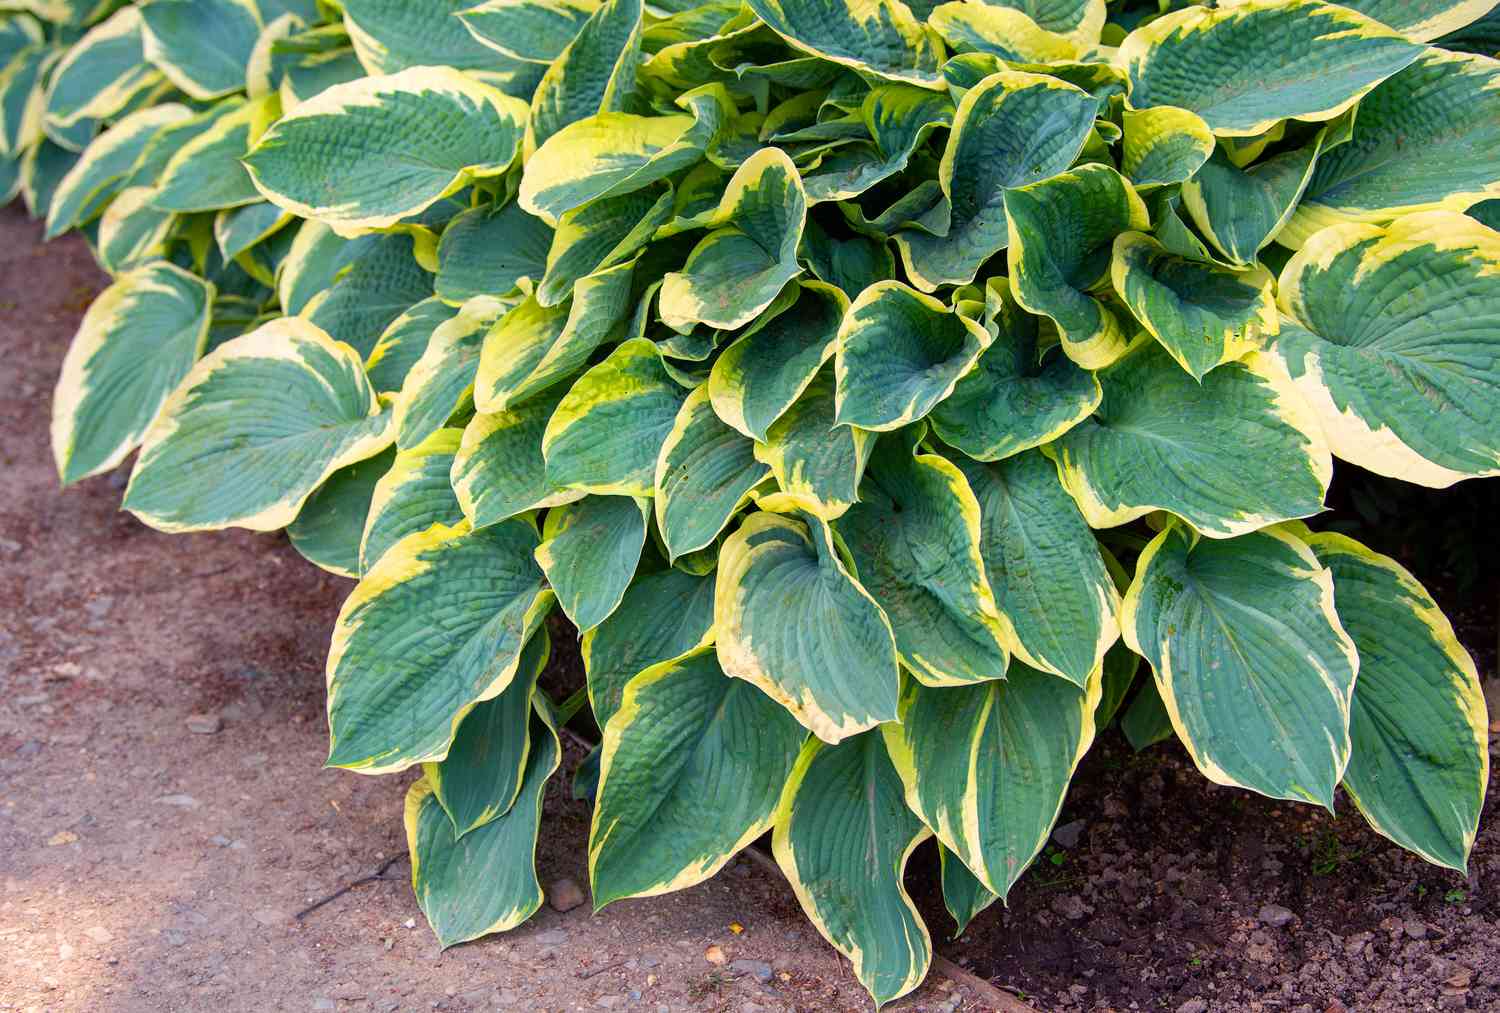 Hosta-Pflanze mit bunten grünen und gelben Blättern, die sich über der Erde ballen